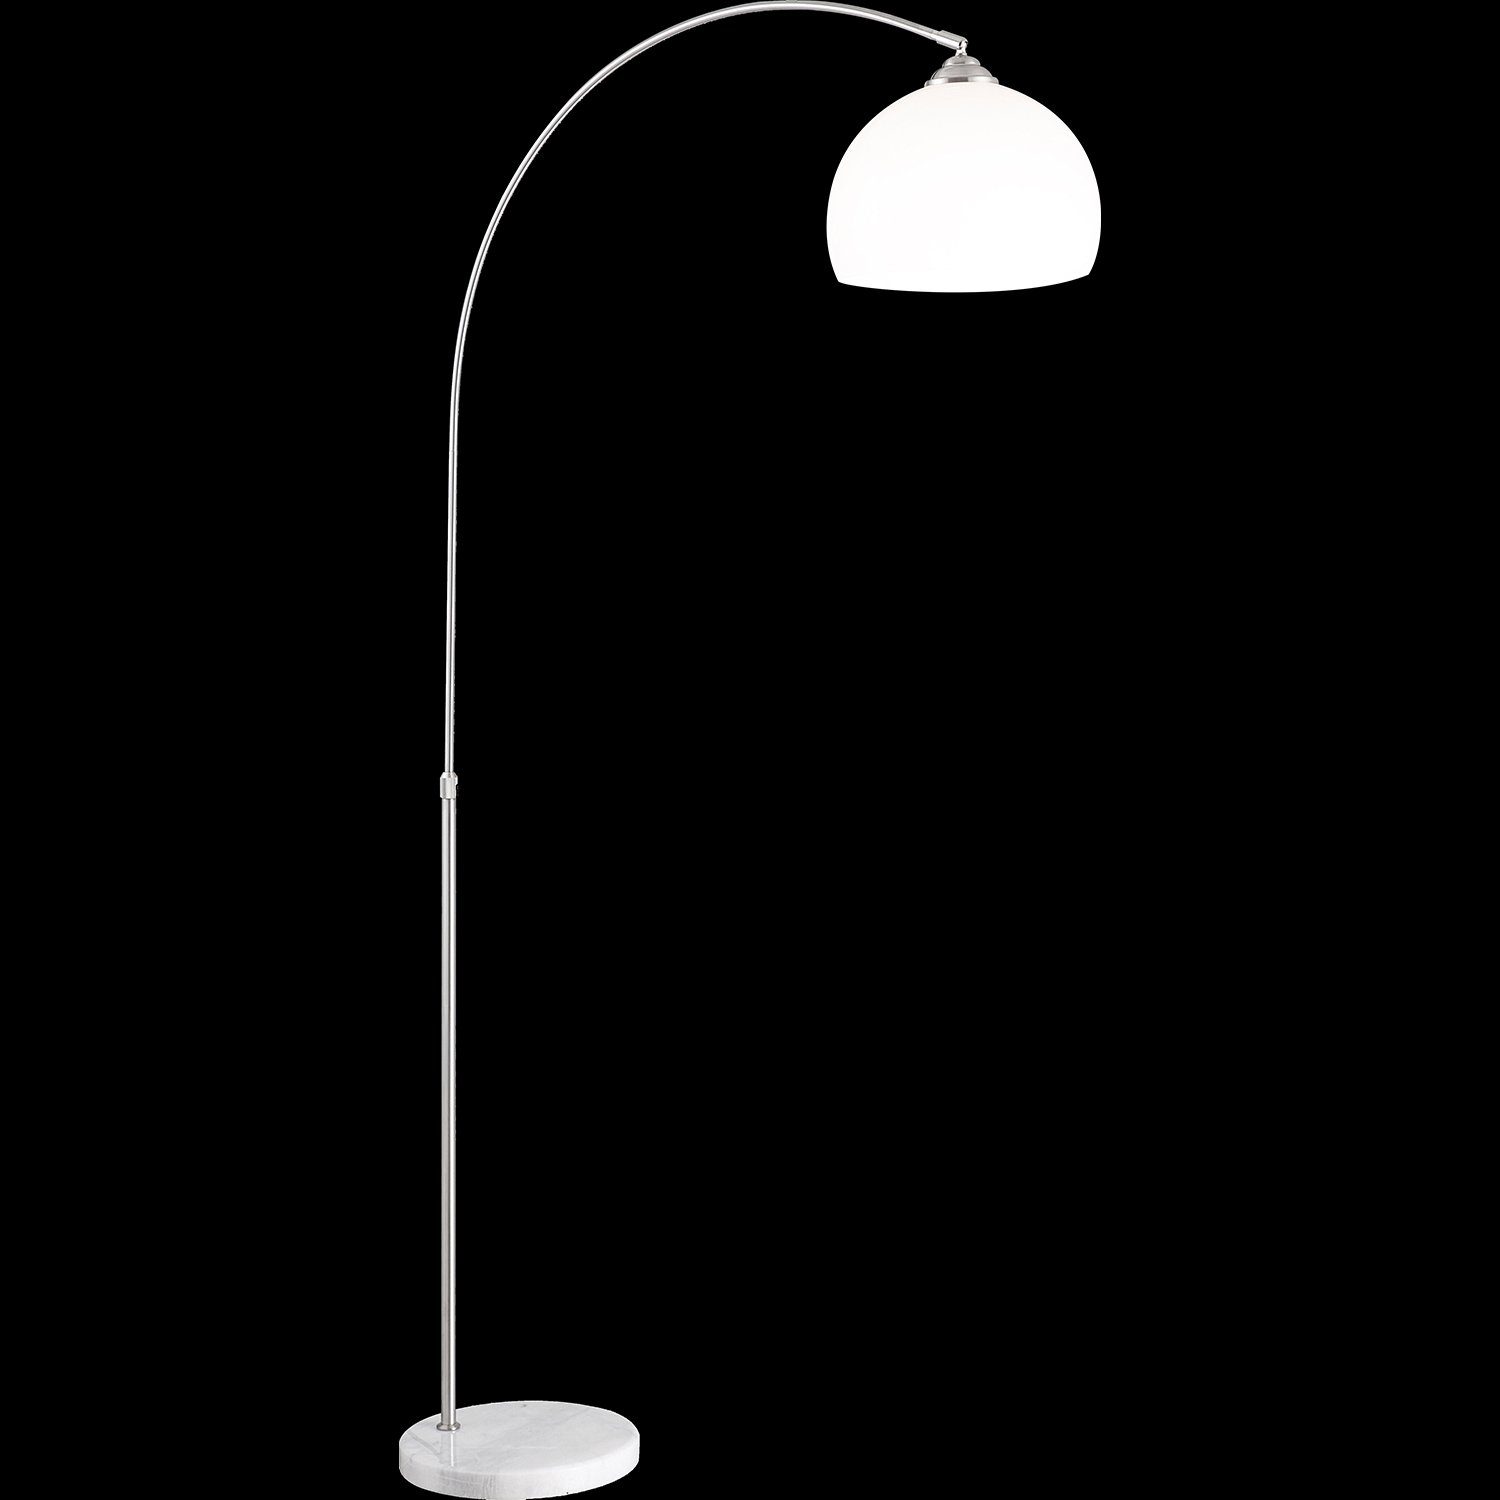 Stehlampe Stehleuchte Leseleuchte Stehlampe Wohnzimmer Globo weiß bogenförmig GLOBO